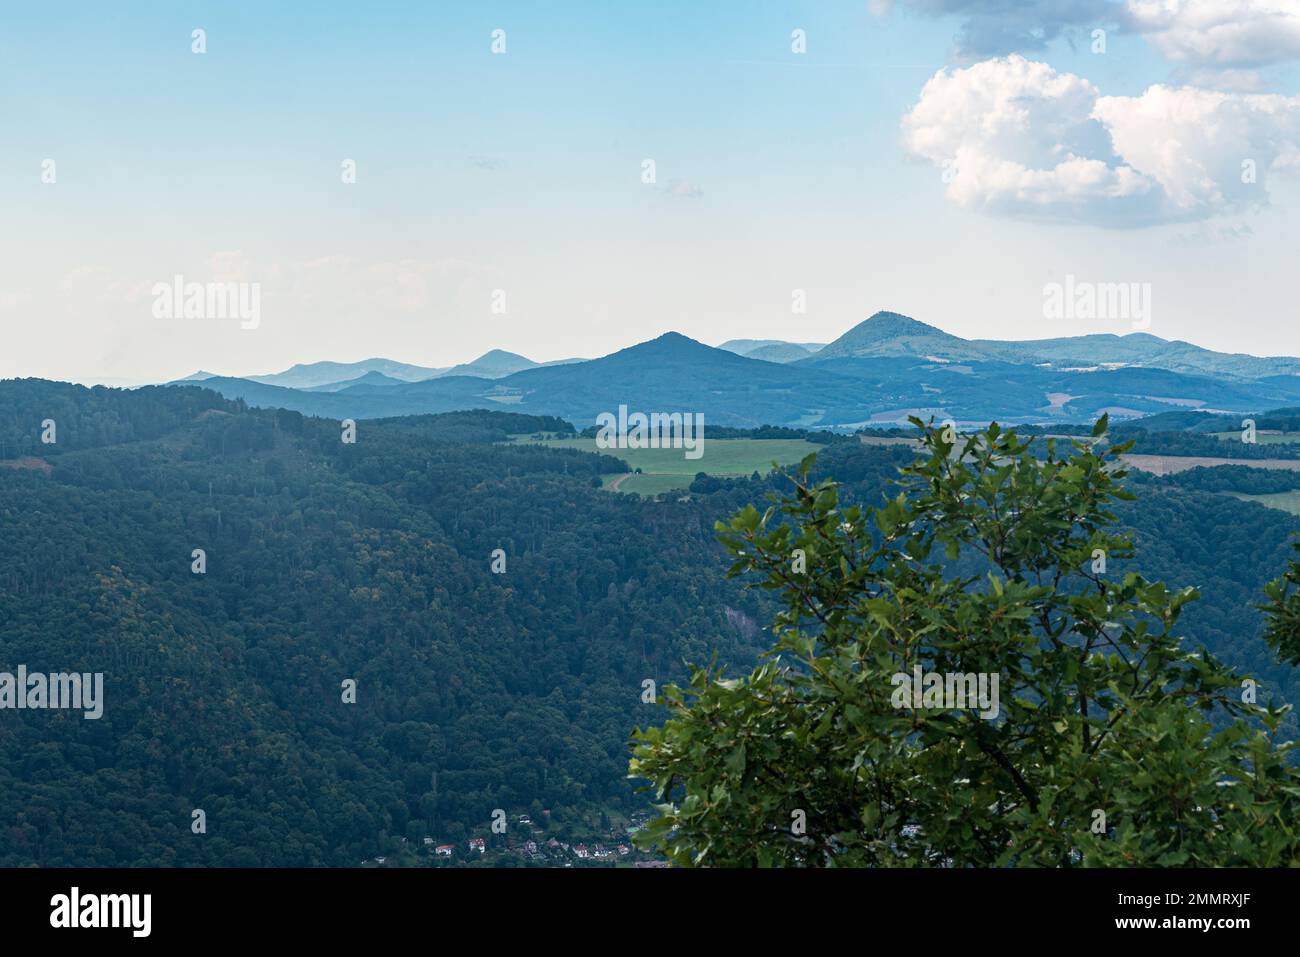 Les collines de Ceske strepdohori depuis la colline Vysoky Ostry près de la ville d'Usti nad Labem en République tchèque pendant une belle journée d'été Banque D'Images